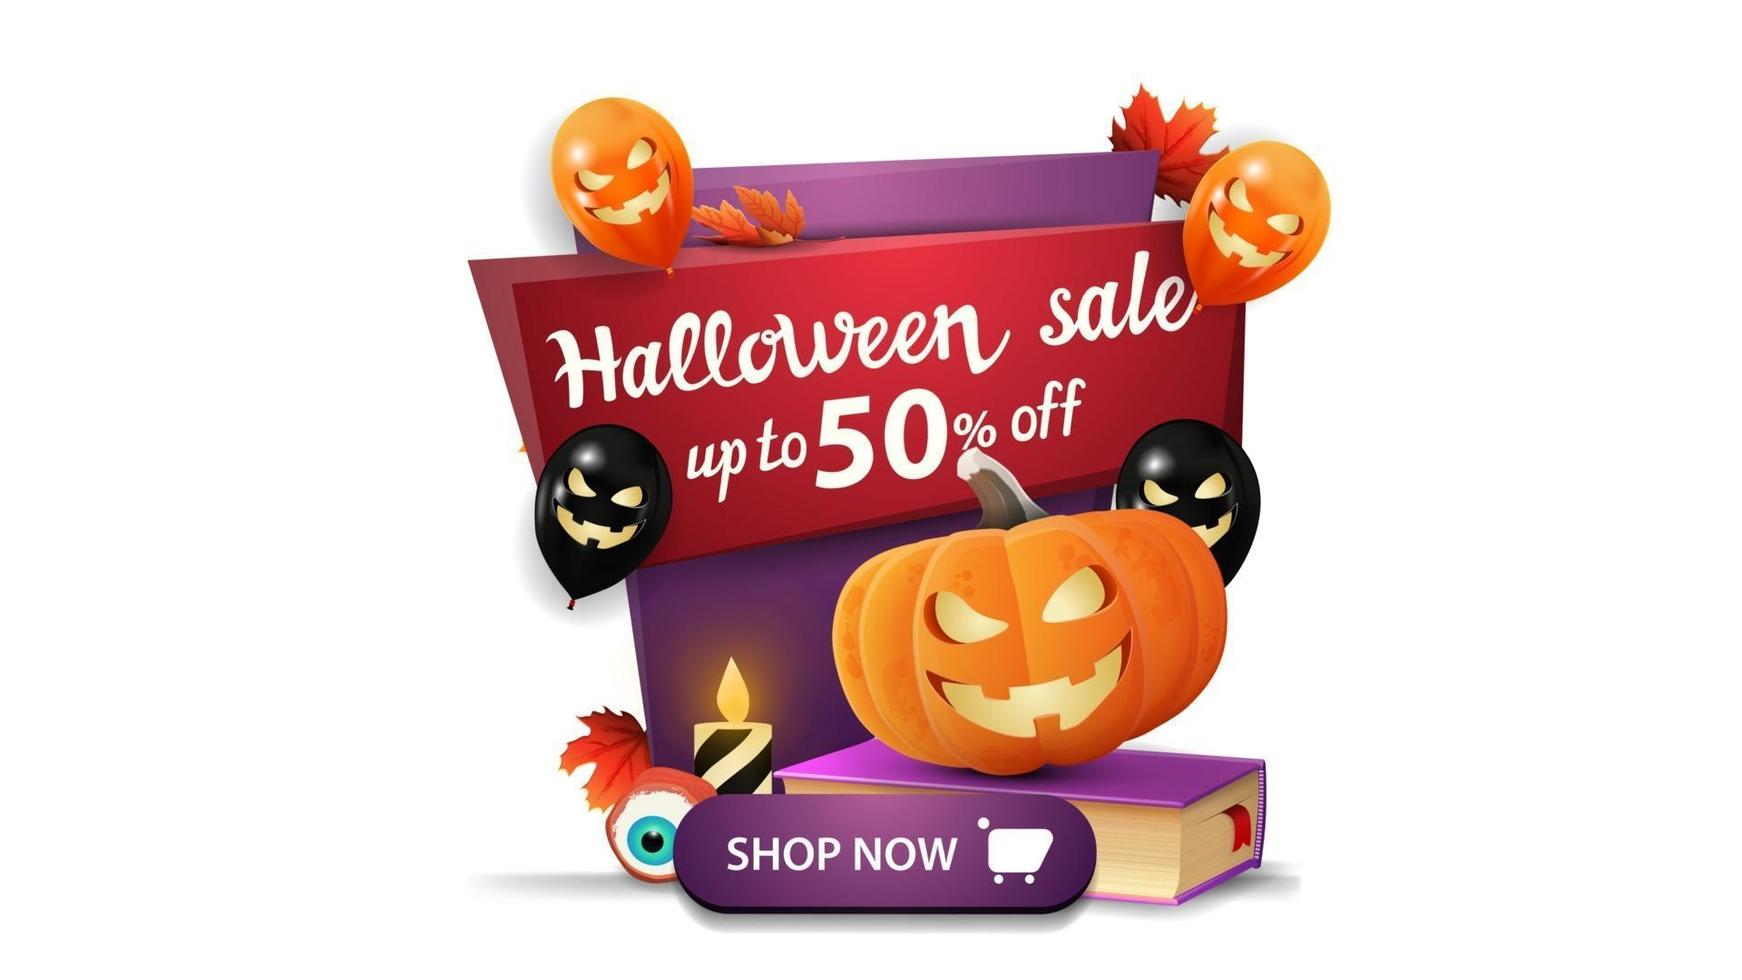 saldi di halloween, fino a 50 di sconto, banner sconto verticale in stile cartone animato con palloncini di halloween, libro degli incantesimi e jack zucca pumpkin vettore